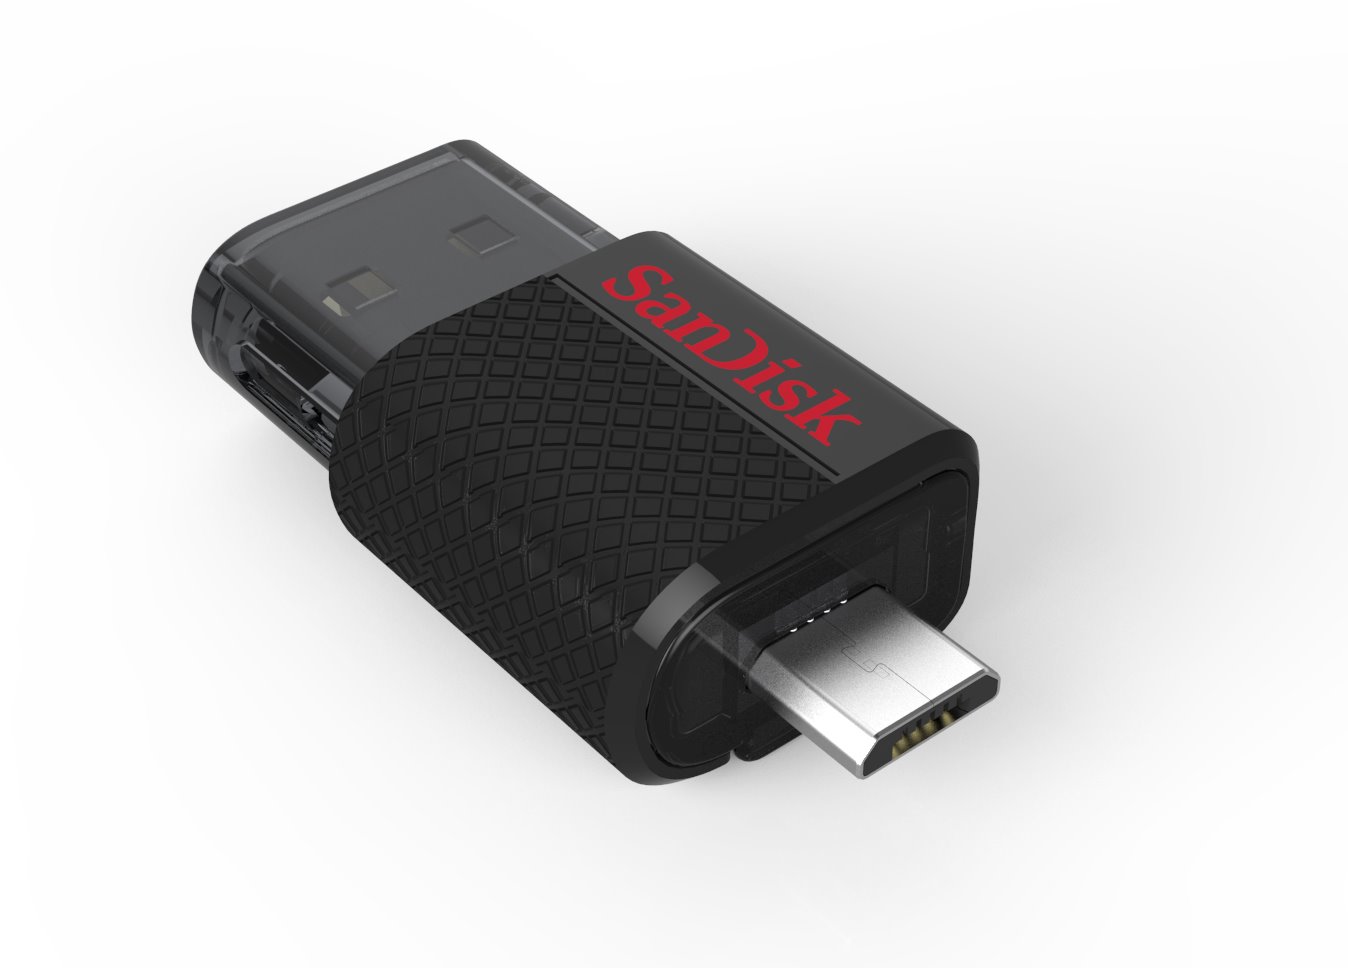 SanDisk Ultra Dual 64 GB USB 3.0, USB Type C Flash Drive